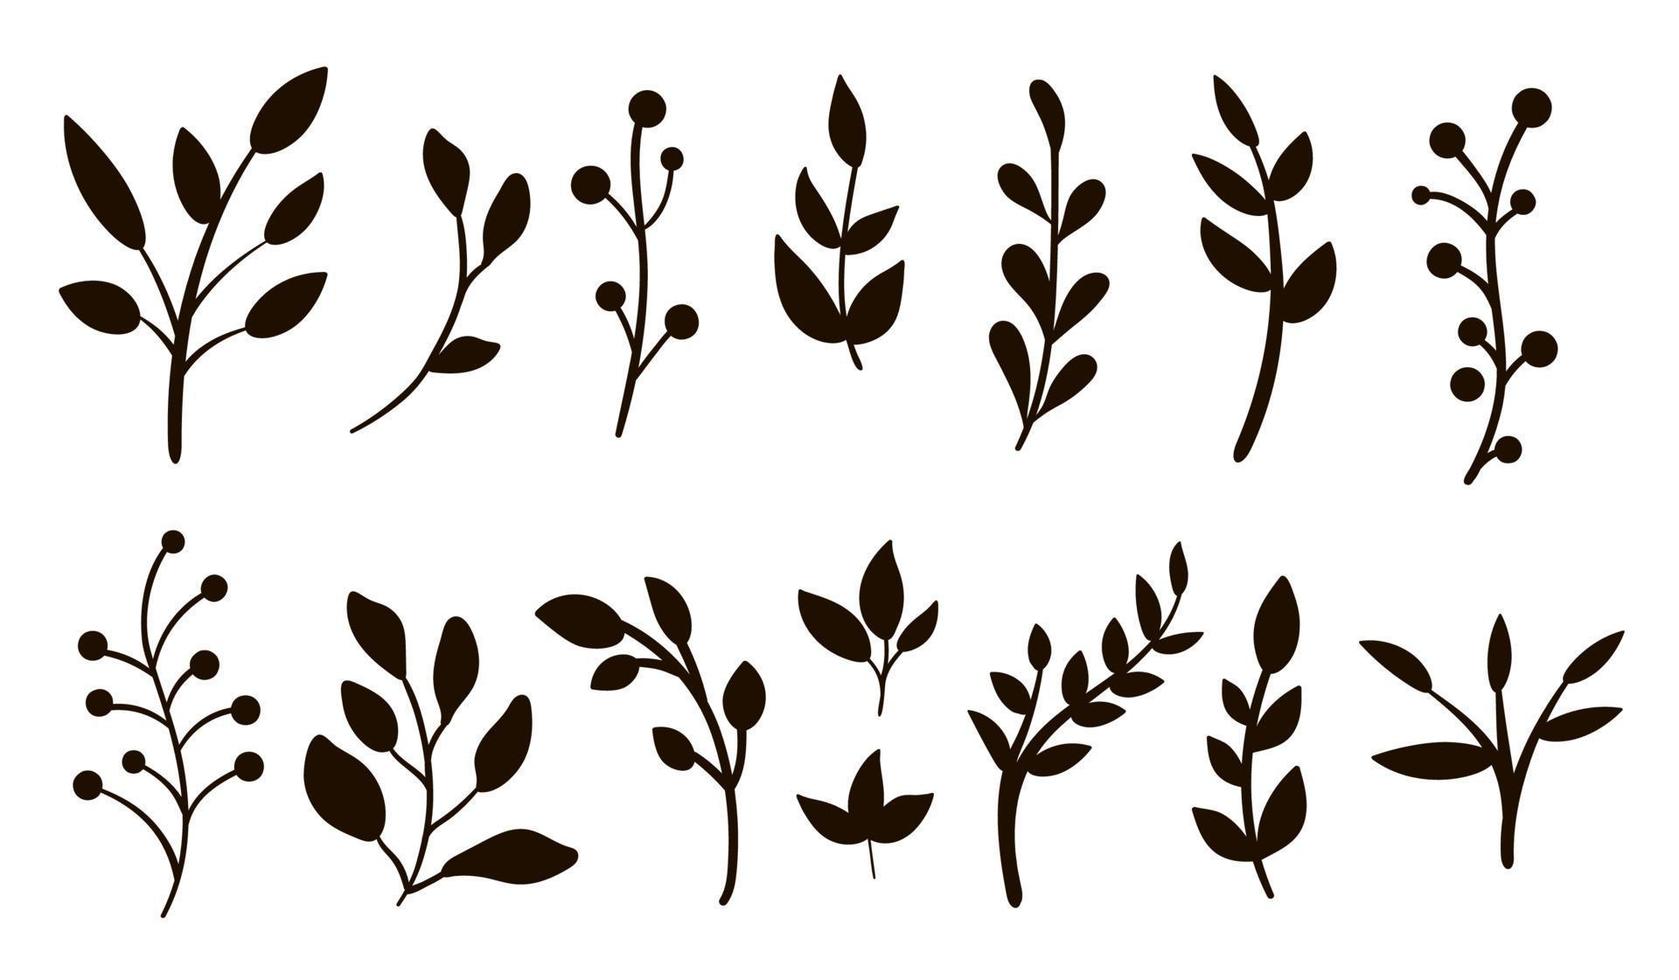 vektor grönska silhuetter ClipArt set. platt trendig illustration med löv, grenar, bär. äng, skog, skog, trädgård svarta element isolerad på vit bakgrund.